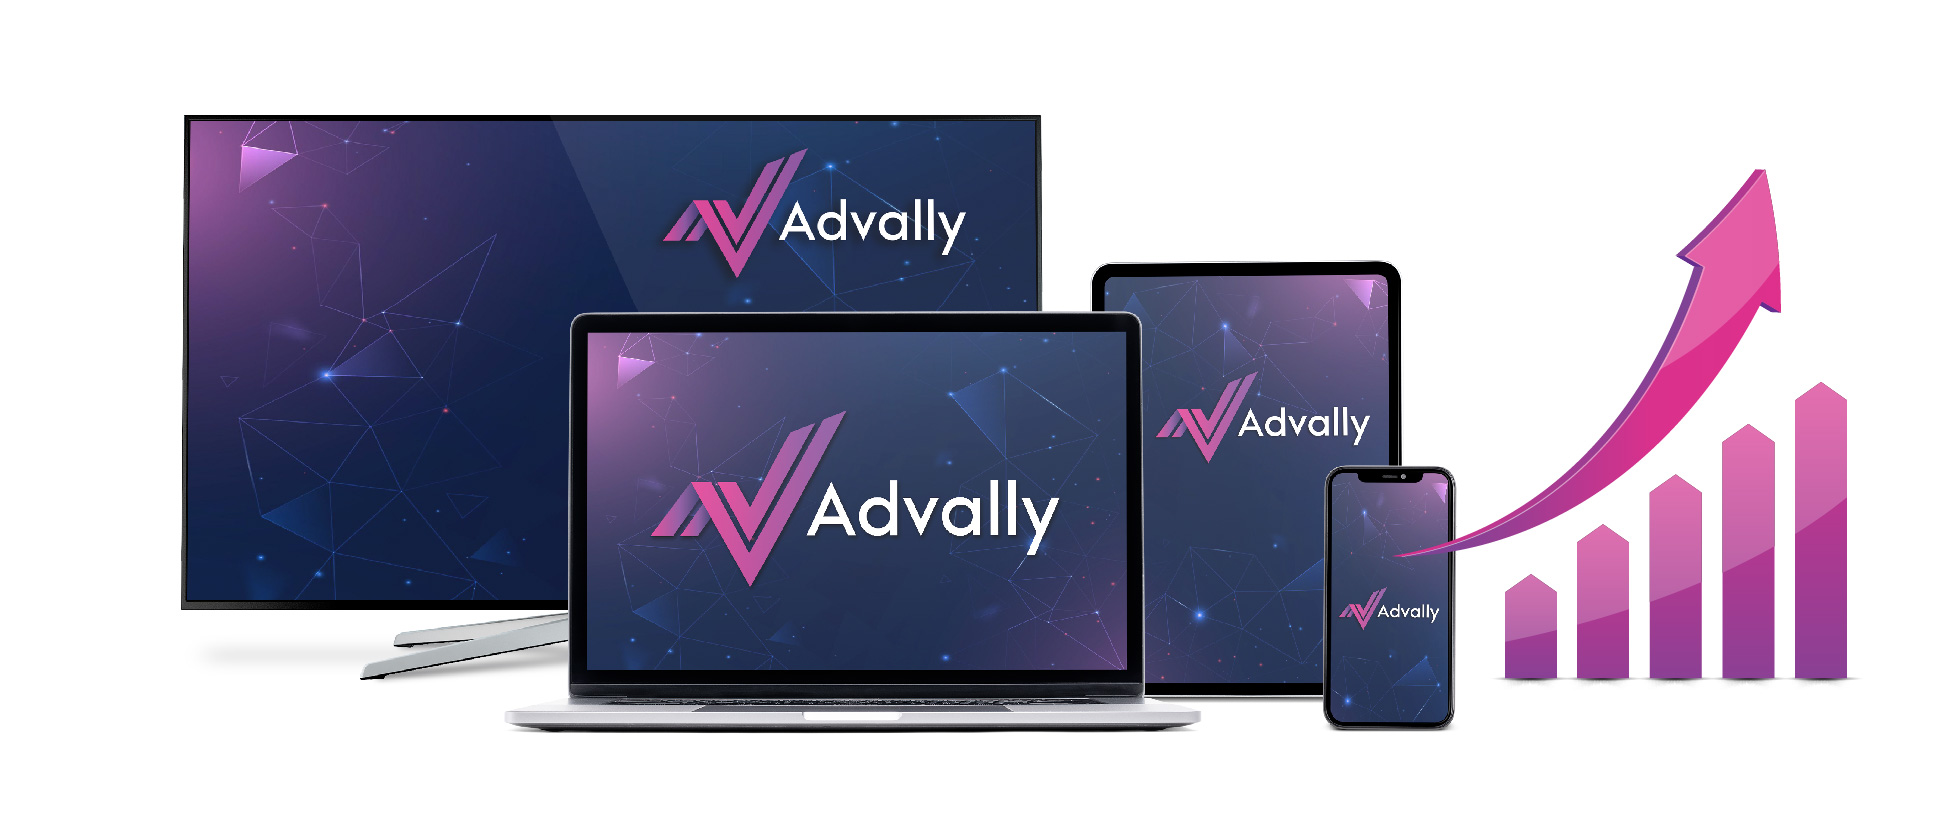 Advally Device Mockups-1